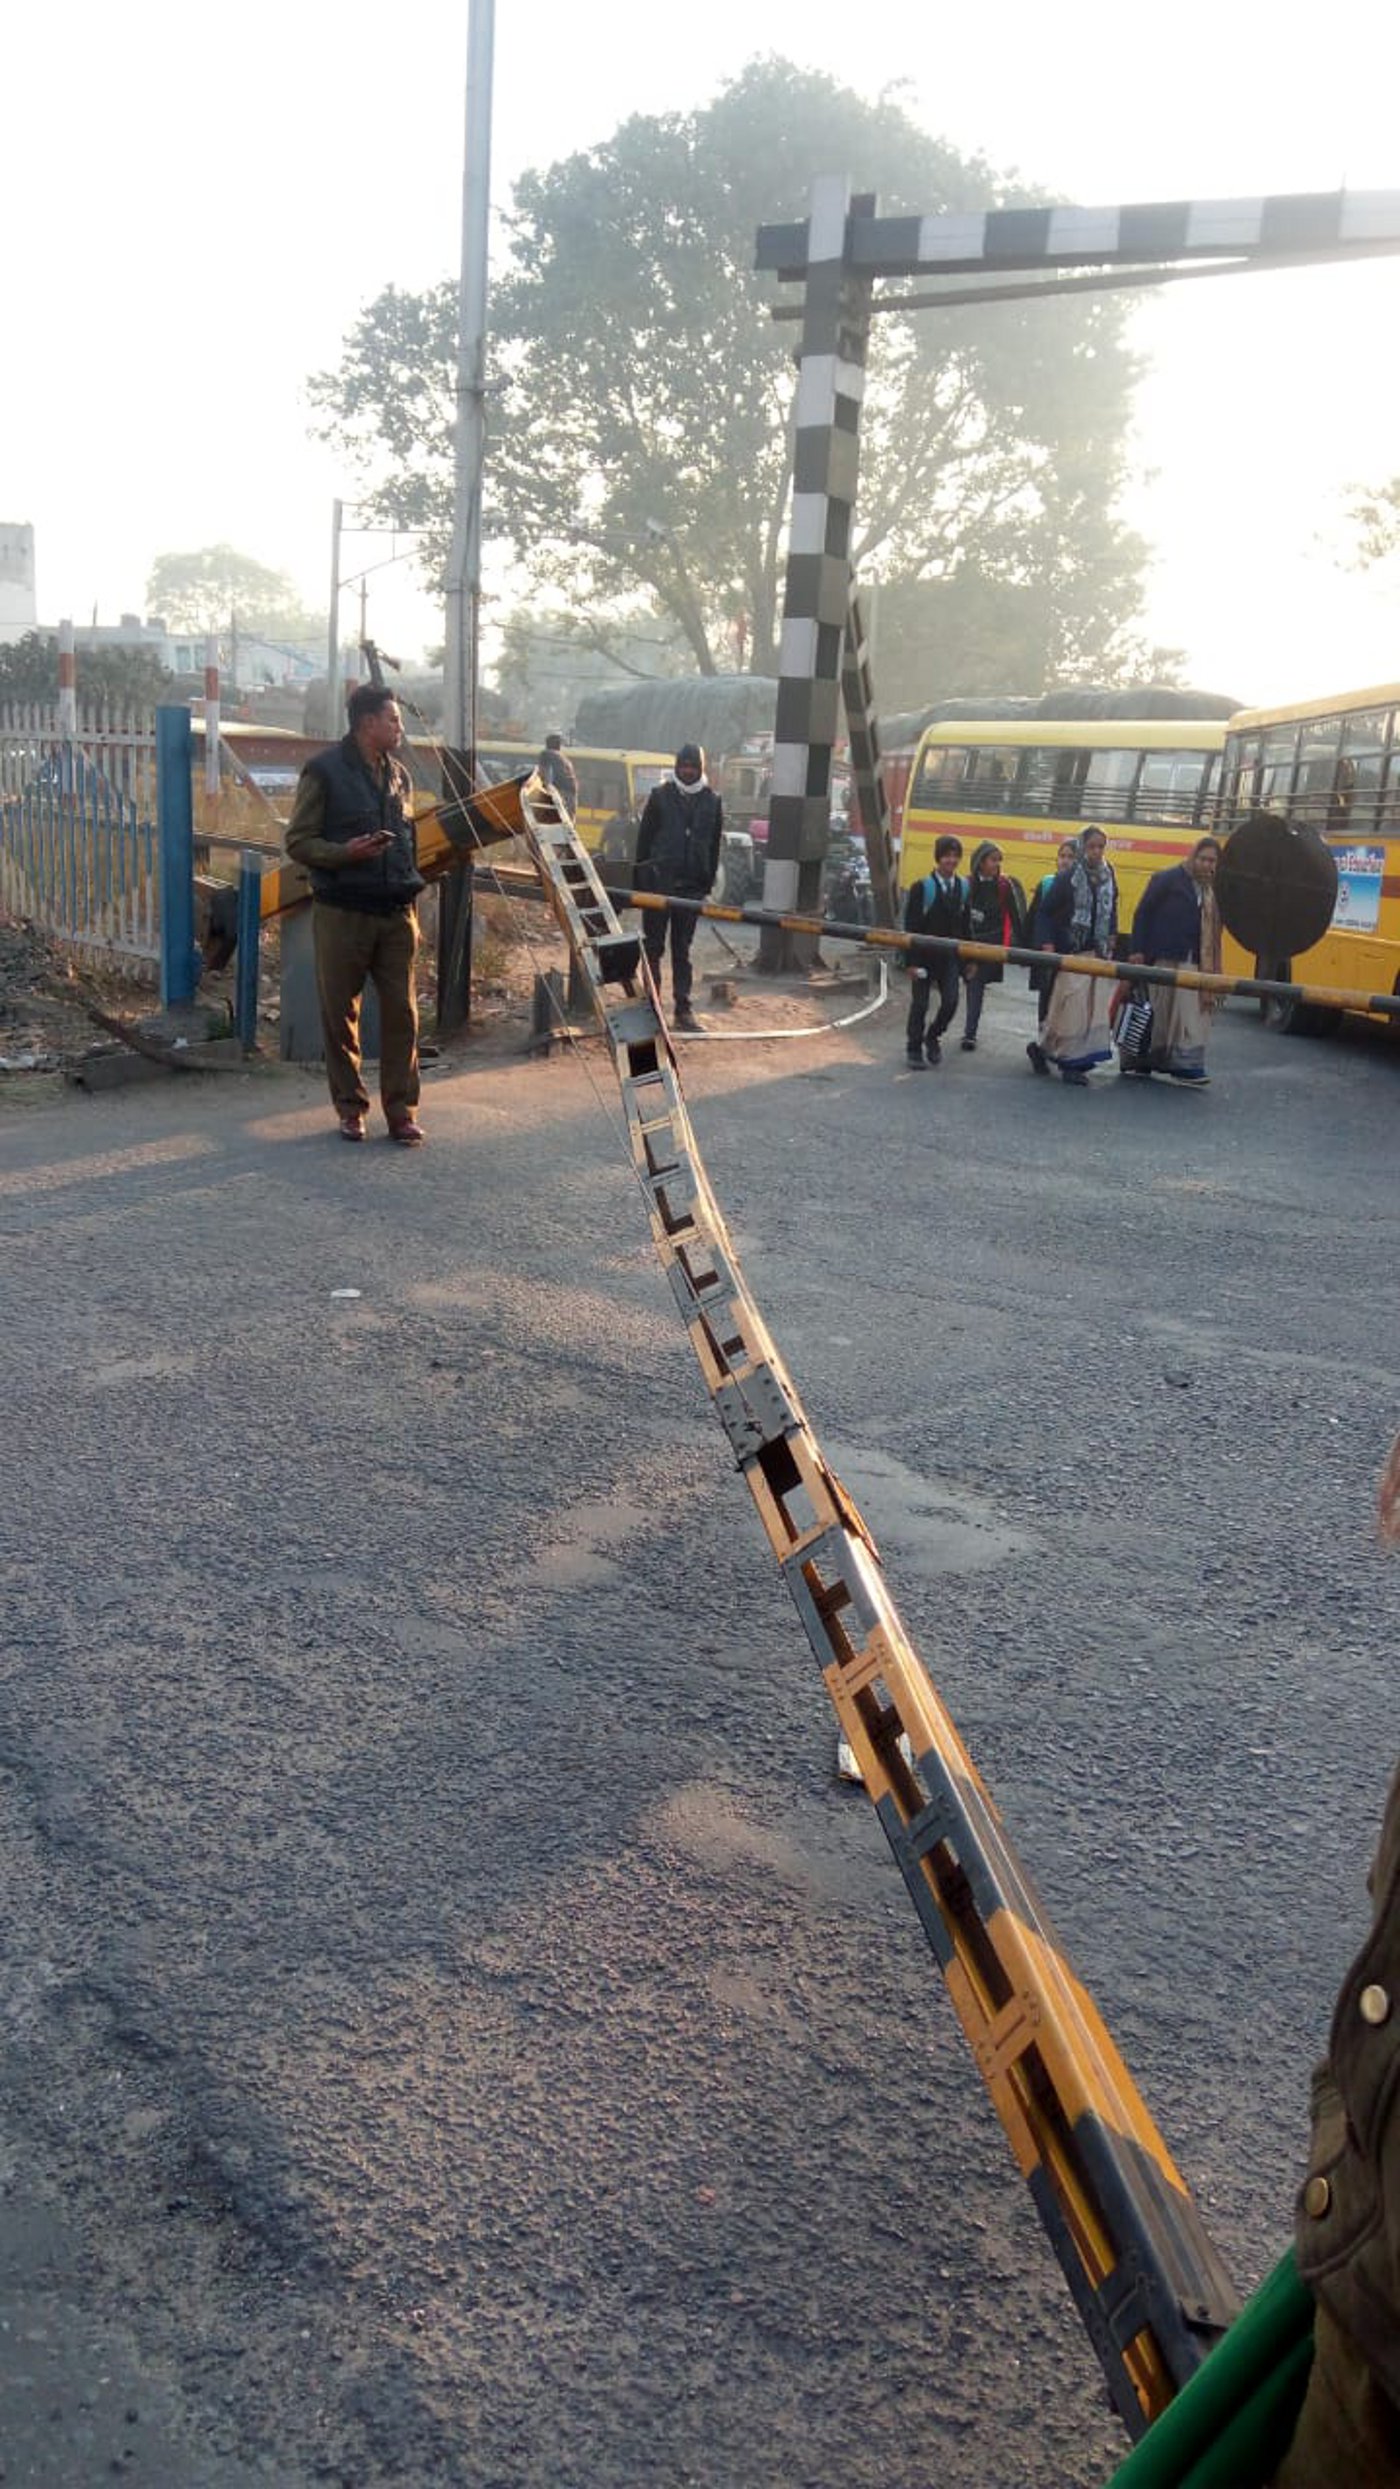 Railway Gate breaks into reaching school